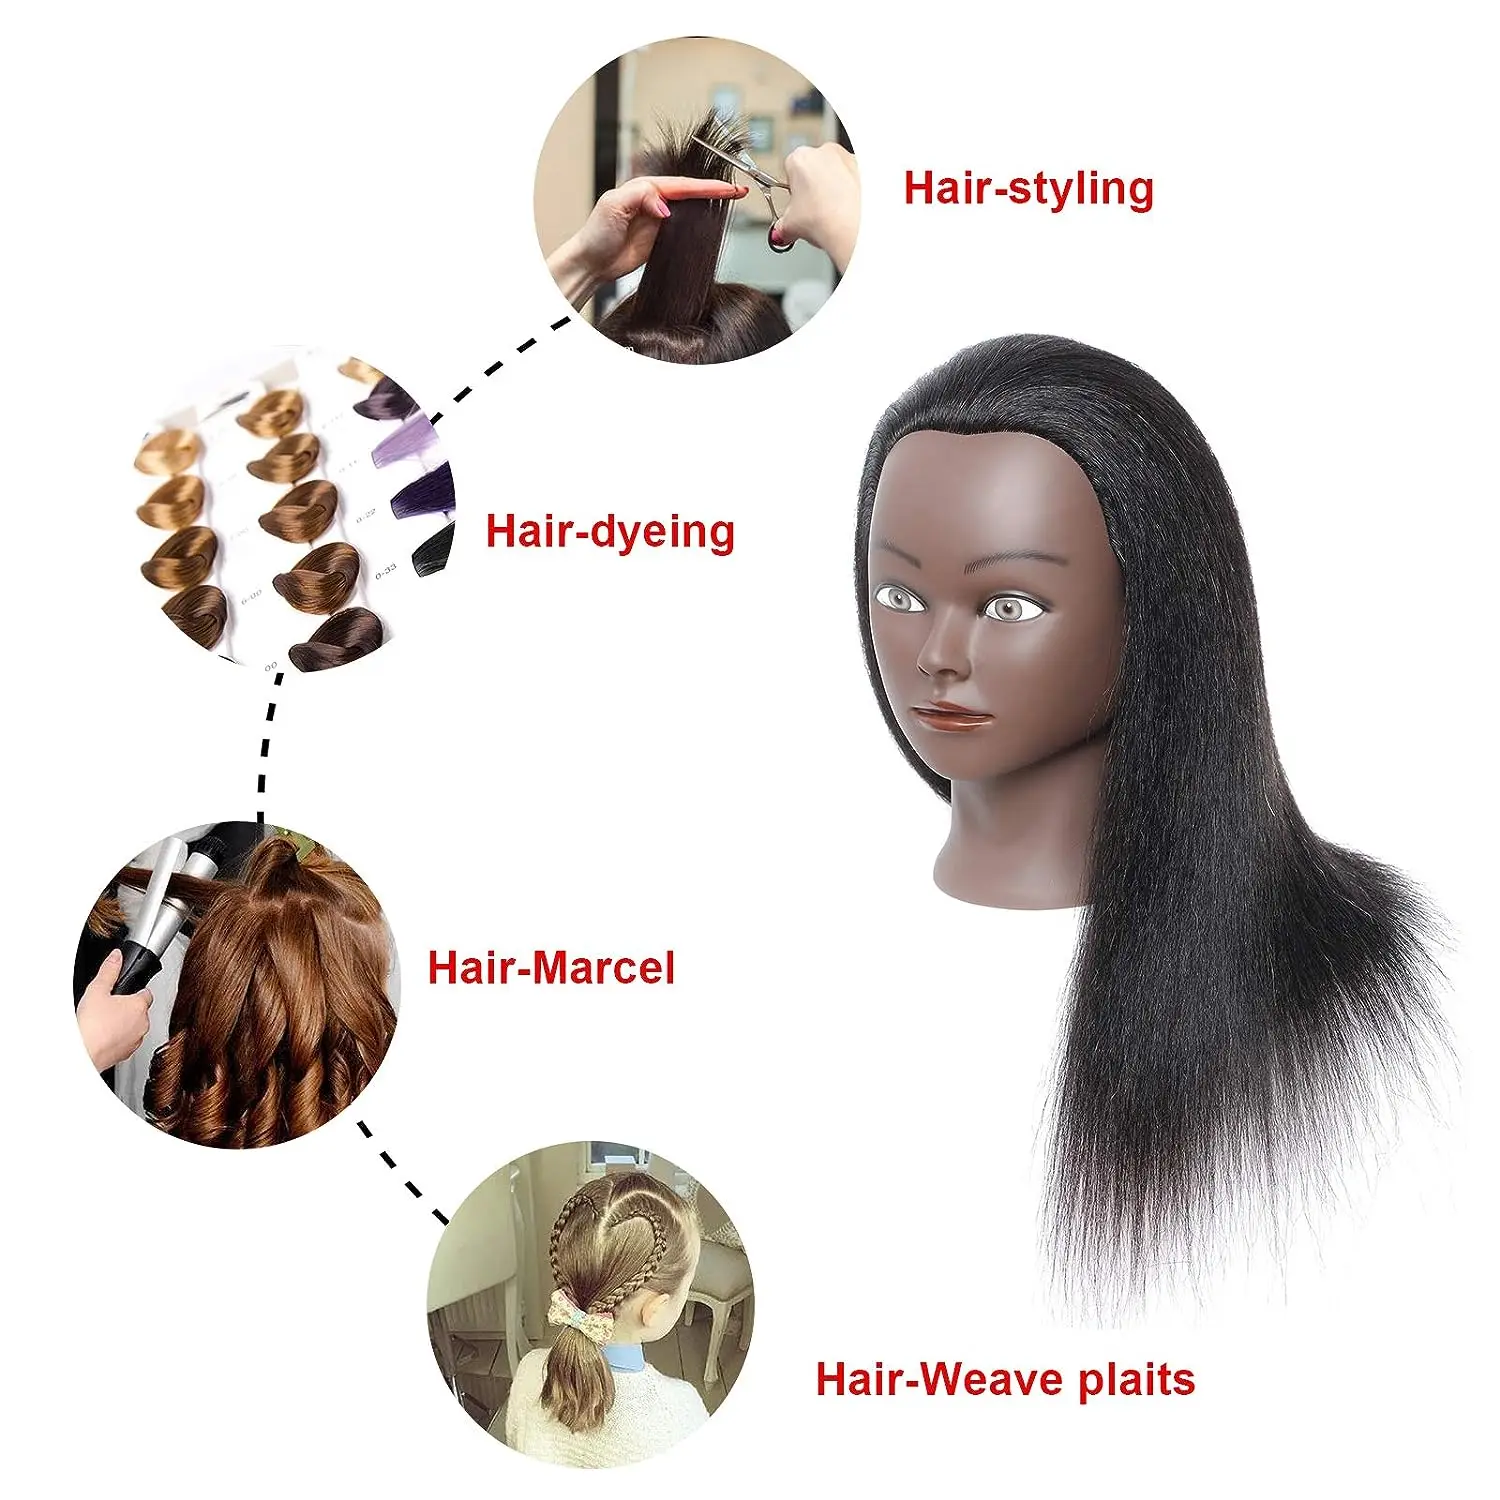 Главата на манекена със синтетична коса, тренировочная главата, косметологический манекен, стоп-моушън главата за фризьорски салон практики, ширити, стайлинг на коса - 4